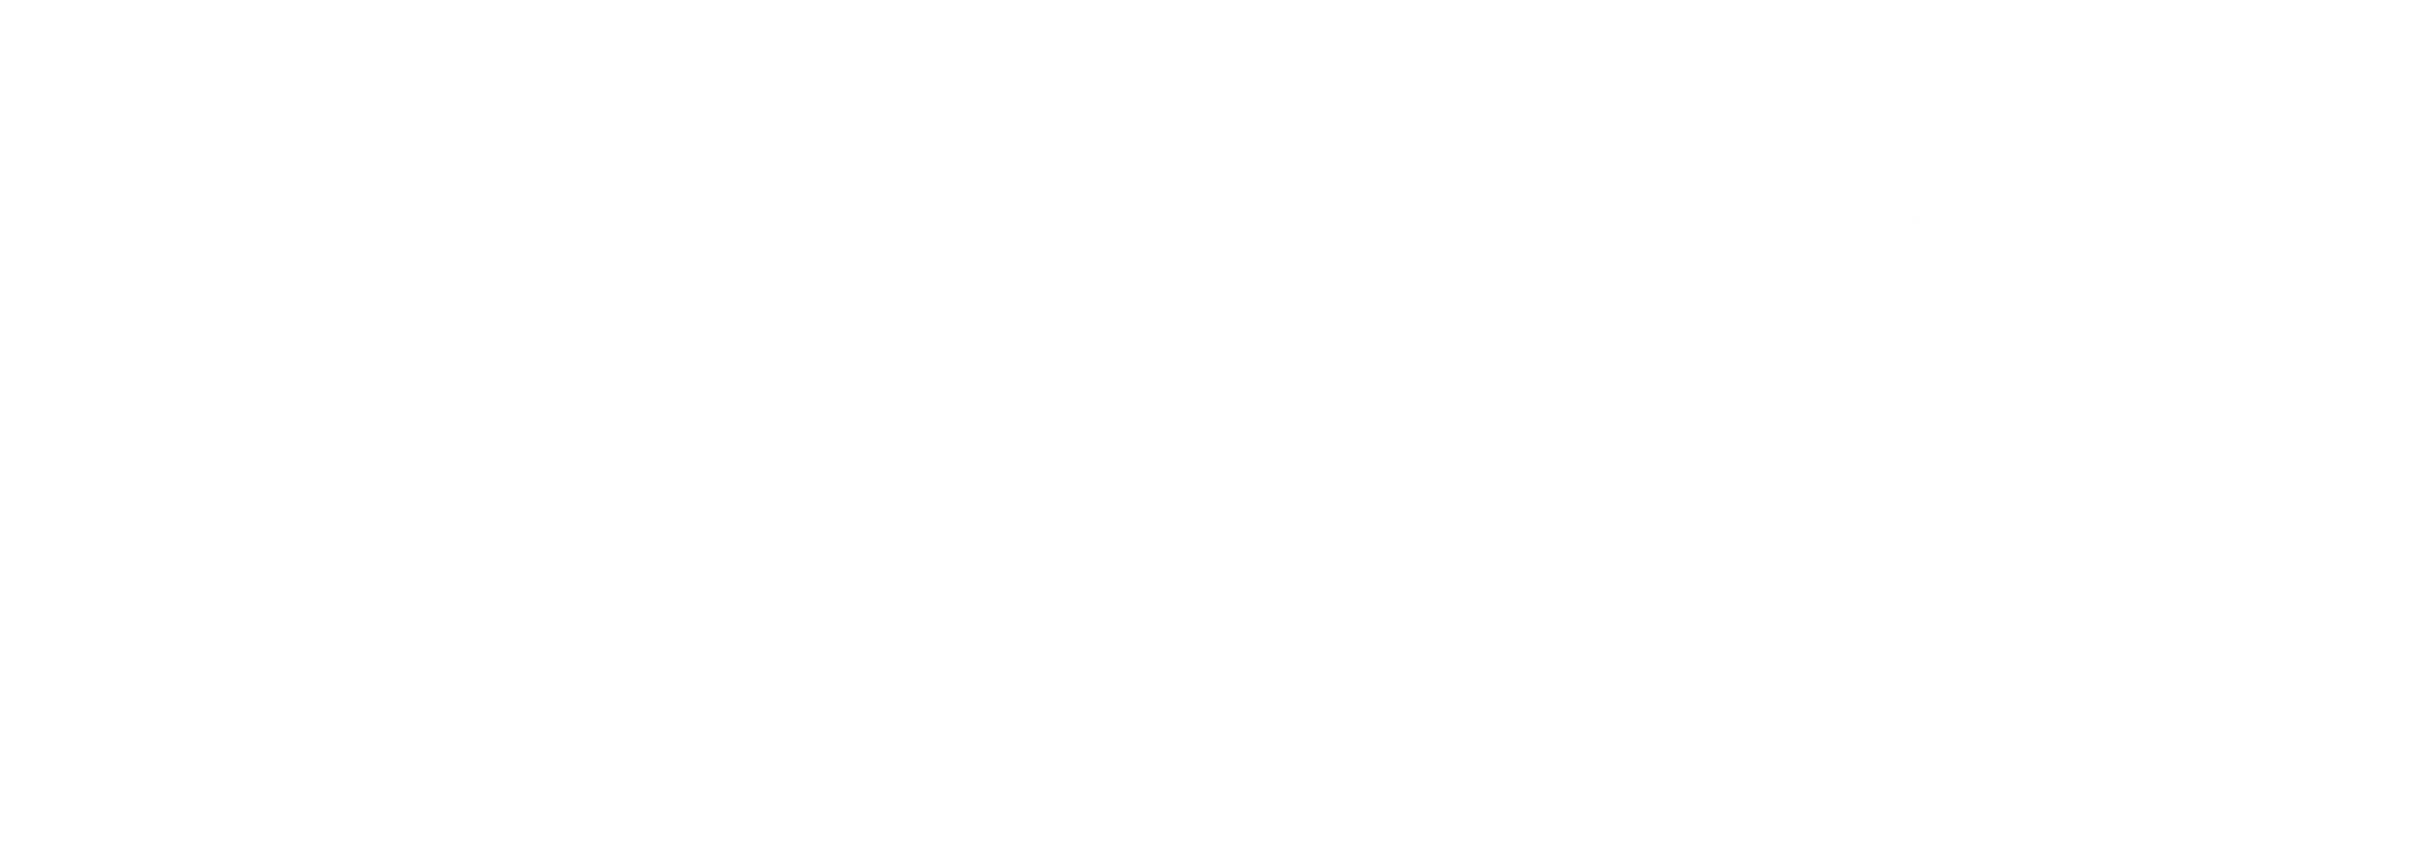 Ofisada Plaza